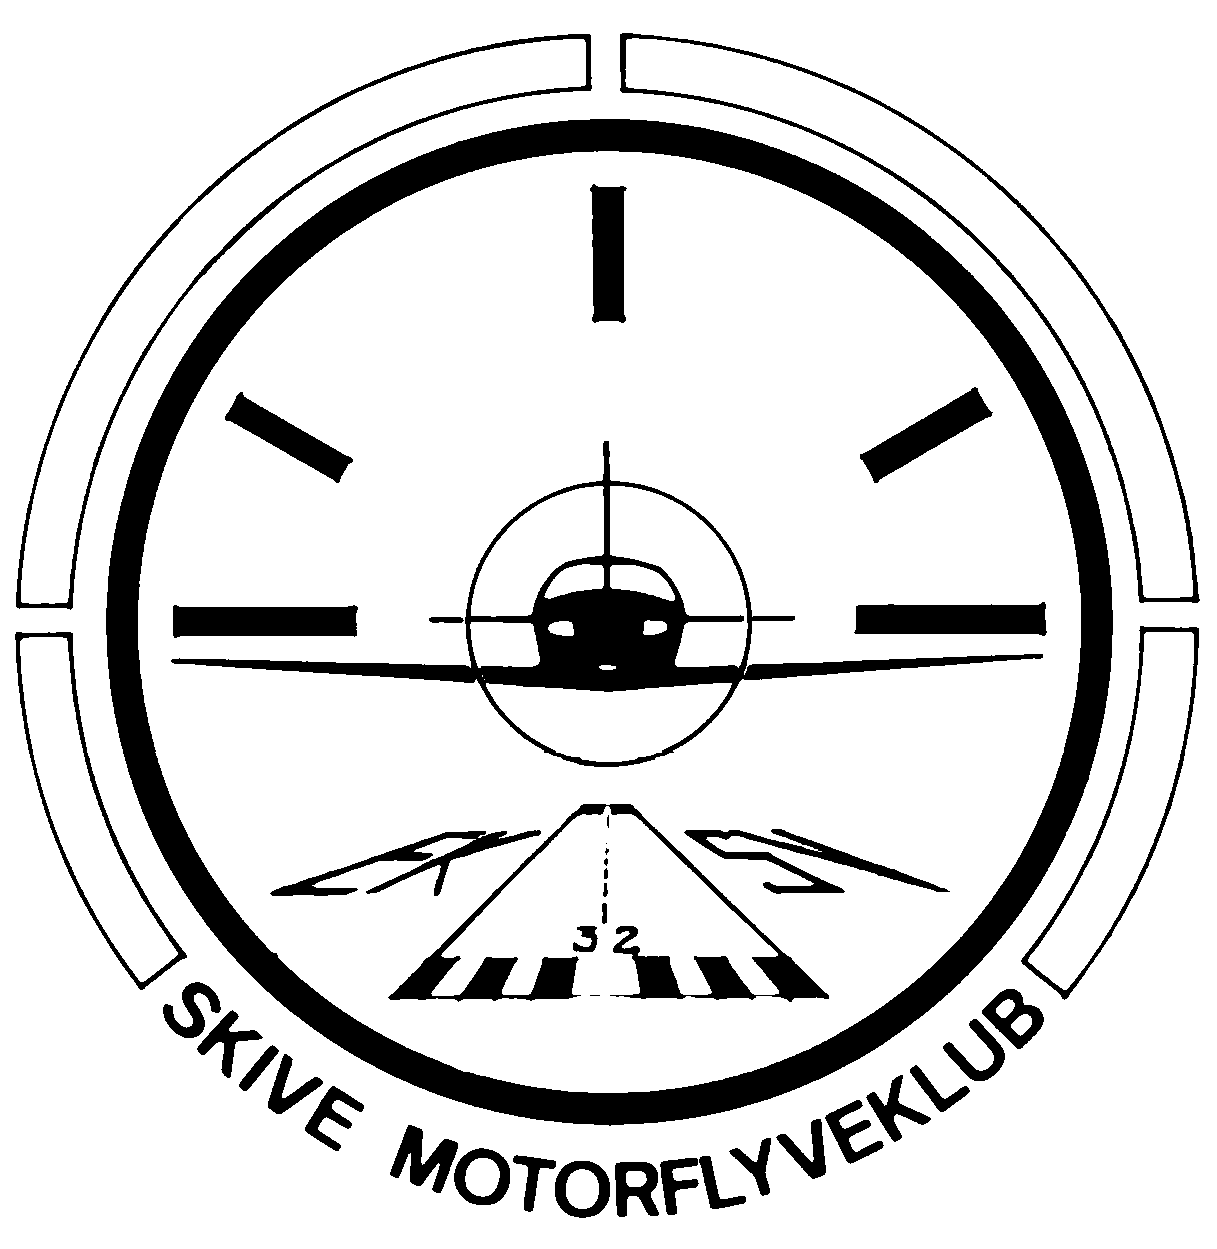 SMF logo